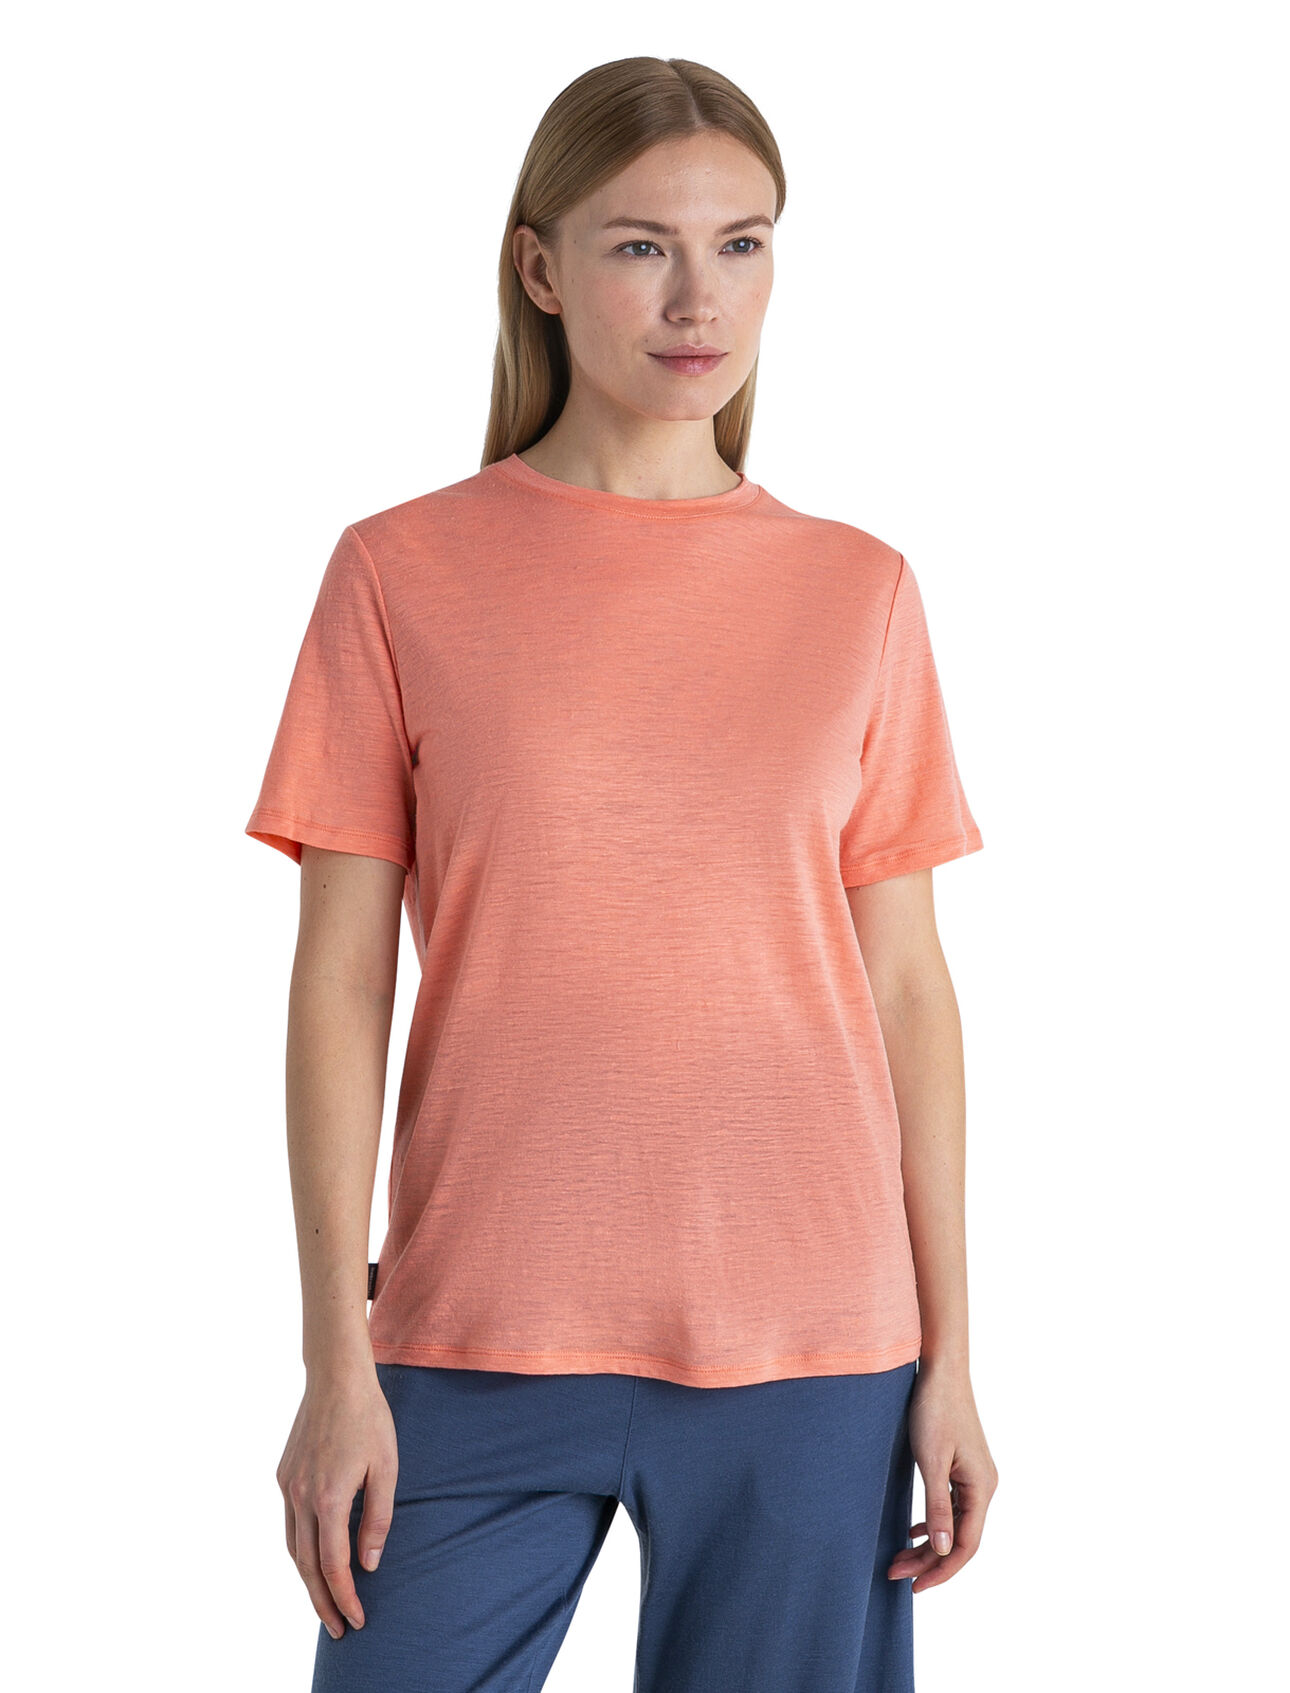 T-shirt en mérinos-lin Femmes T-shirt léger, polyvalent en fait en mélange de laine mérinos et de lin, le t-shirt en mérinos-lin est un incontournable du confort et du style quotidiens. 